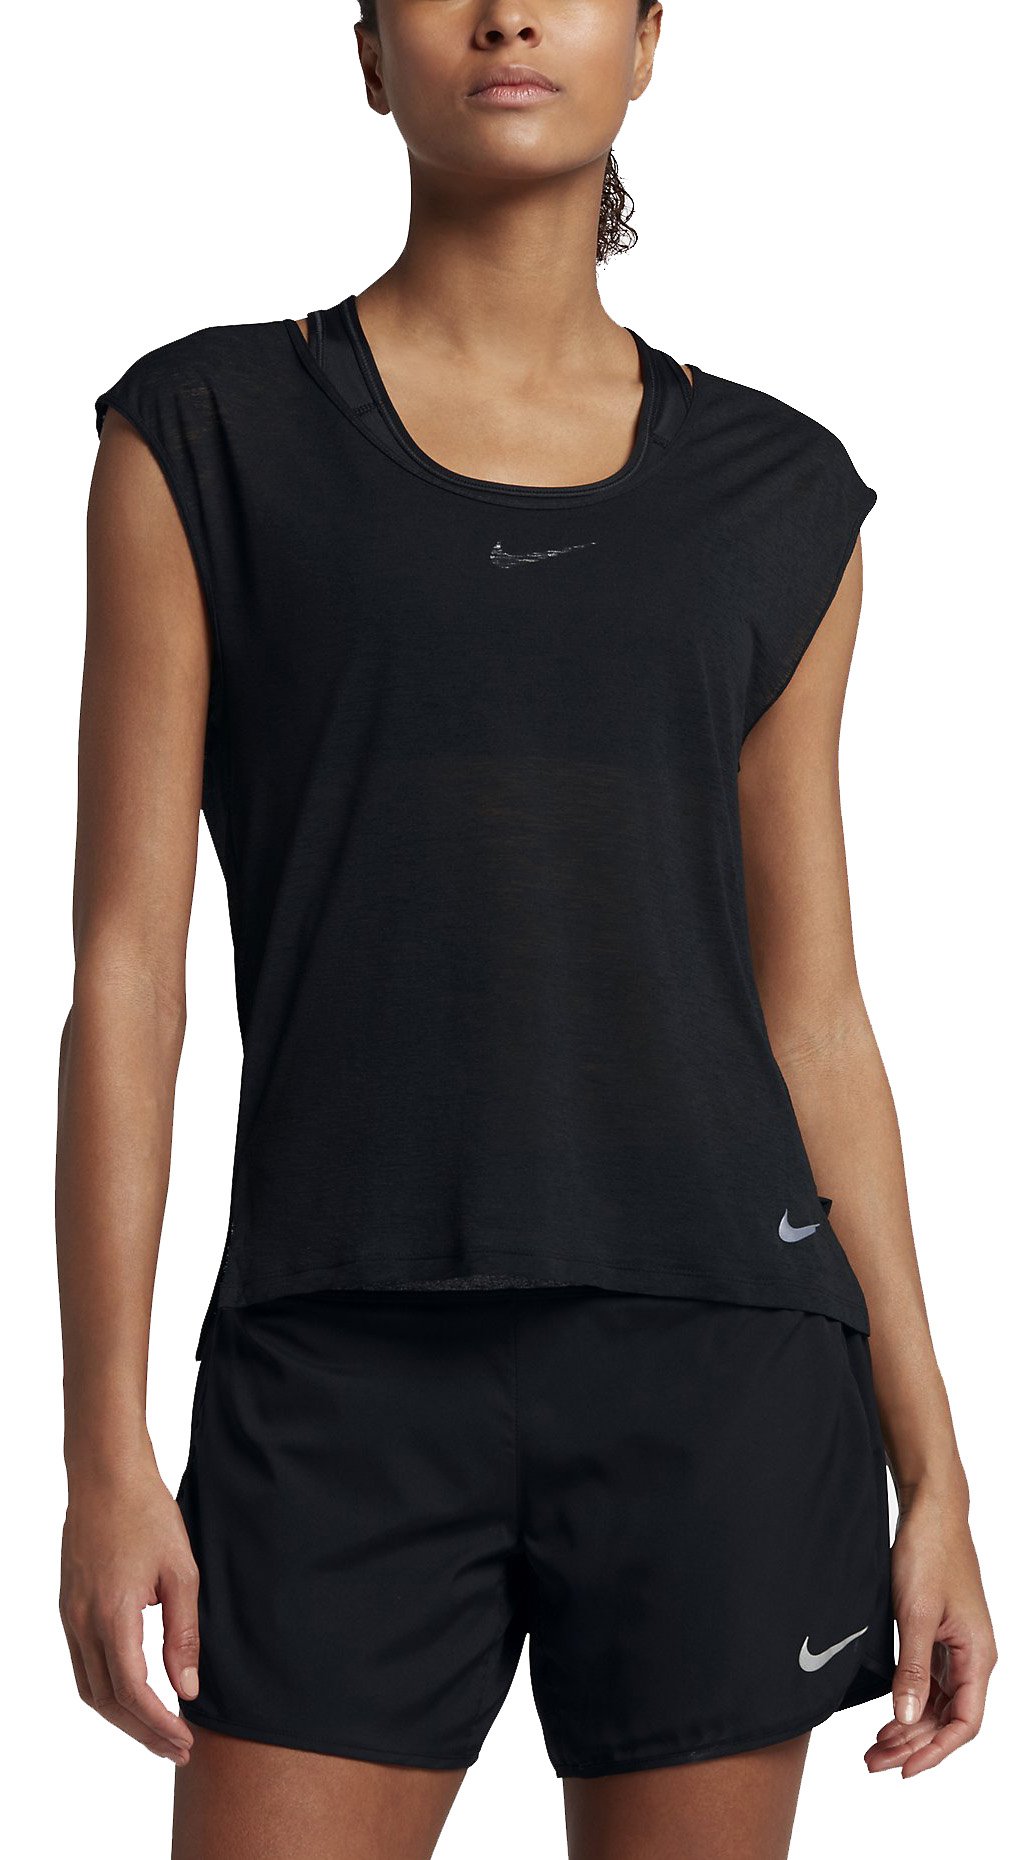 Dámské běžecké tričko Nike Breathe